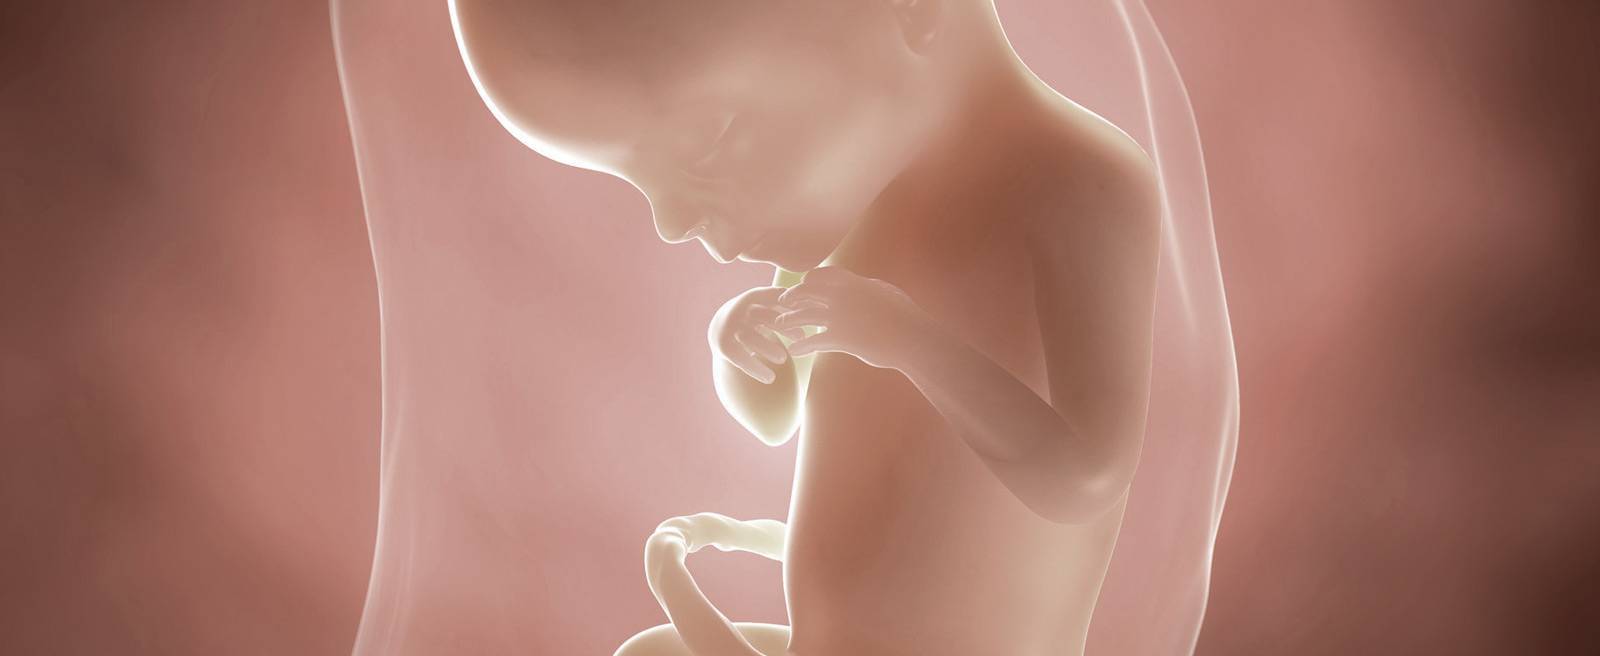 19 неделя беременности: что происходит с мамой, развитие ребенка